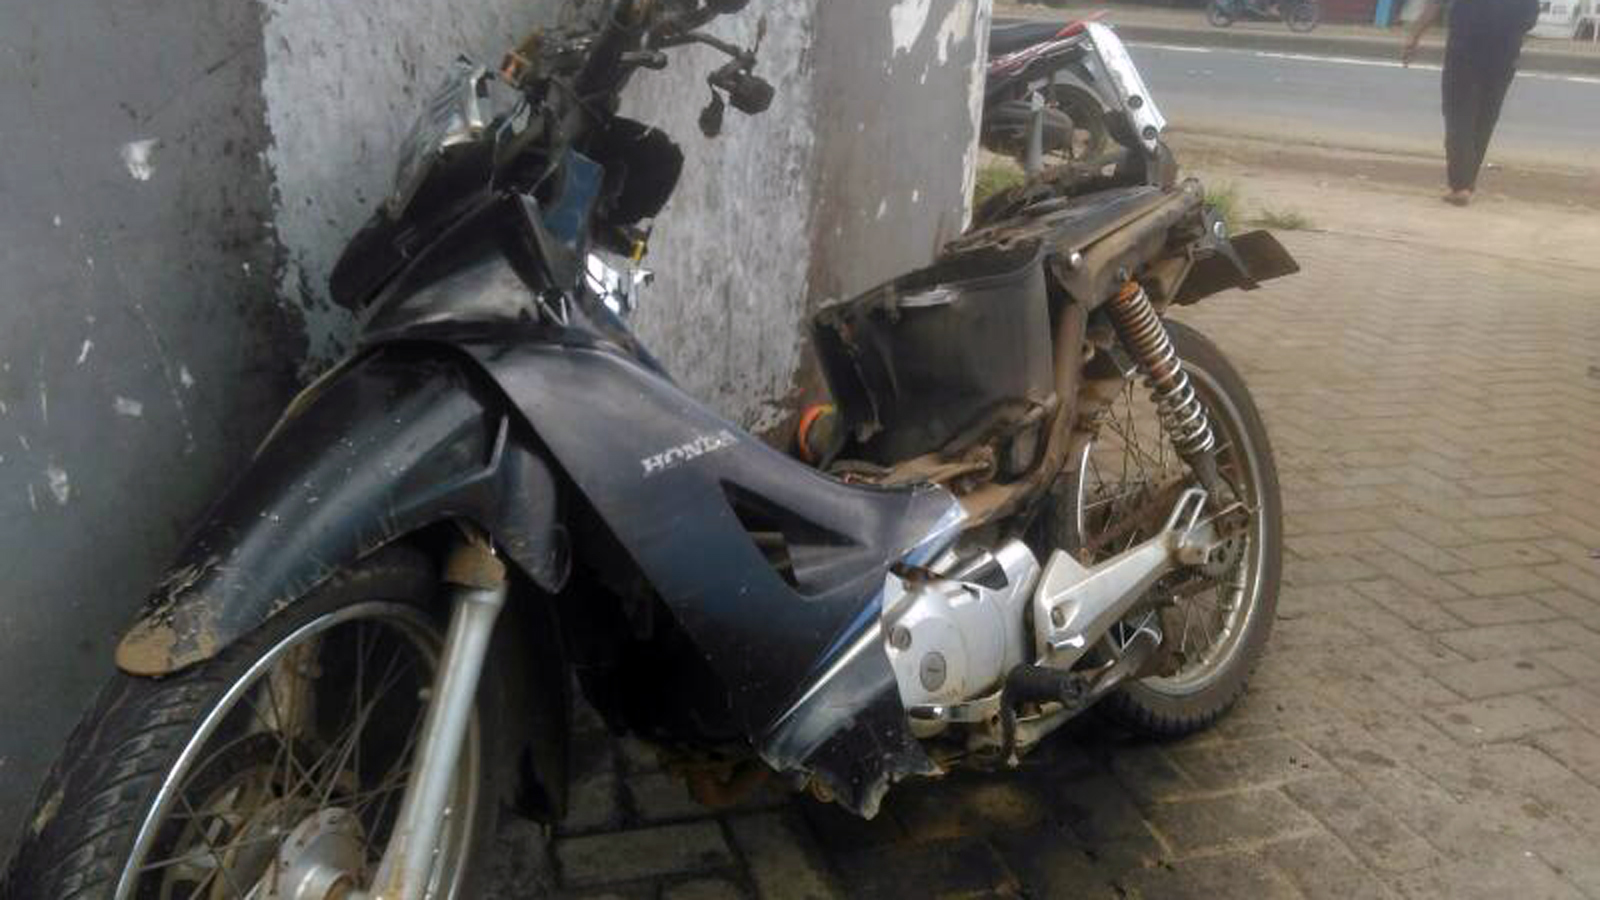 Sepeda motor korban. (Lampungnews/Davit)